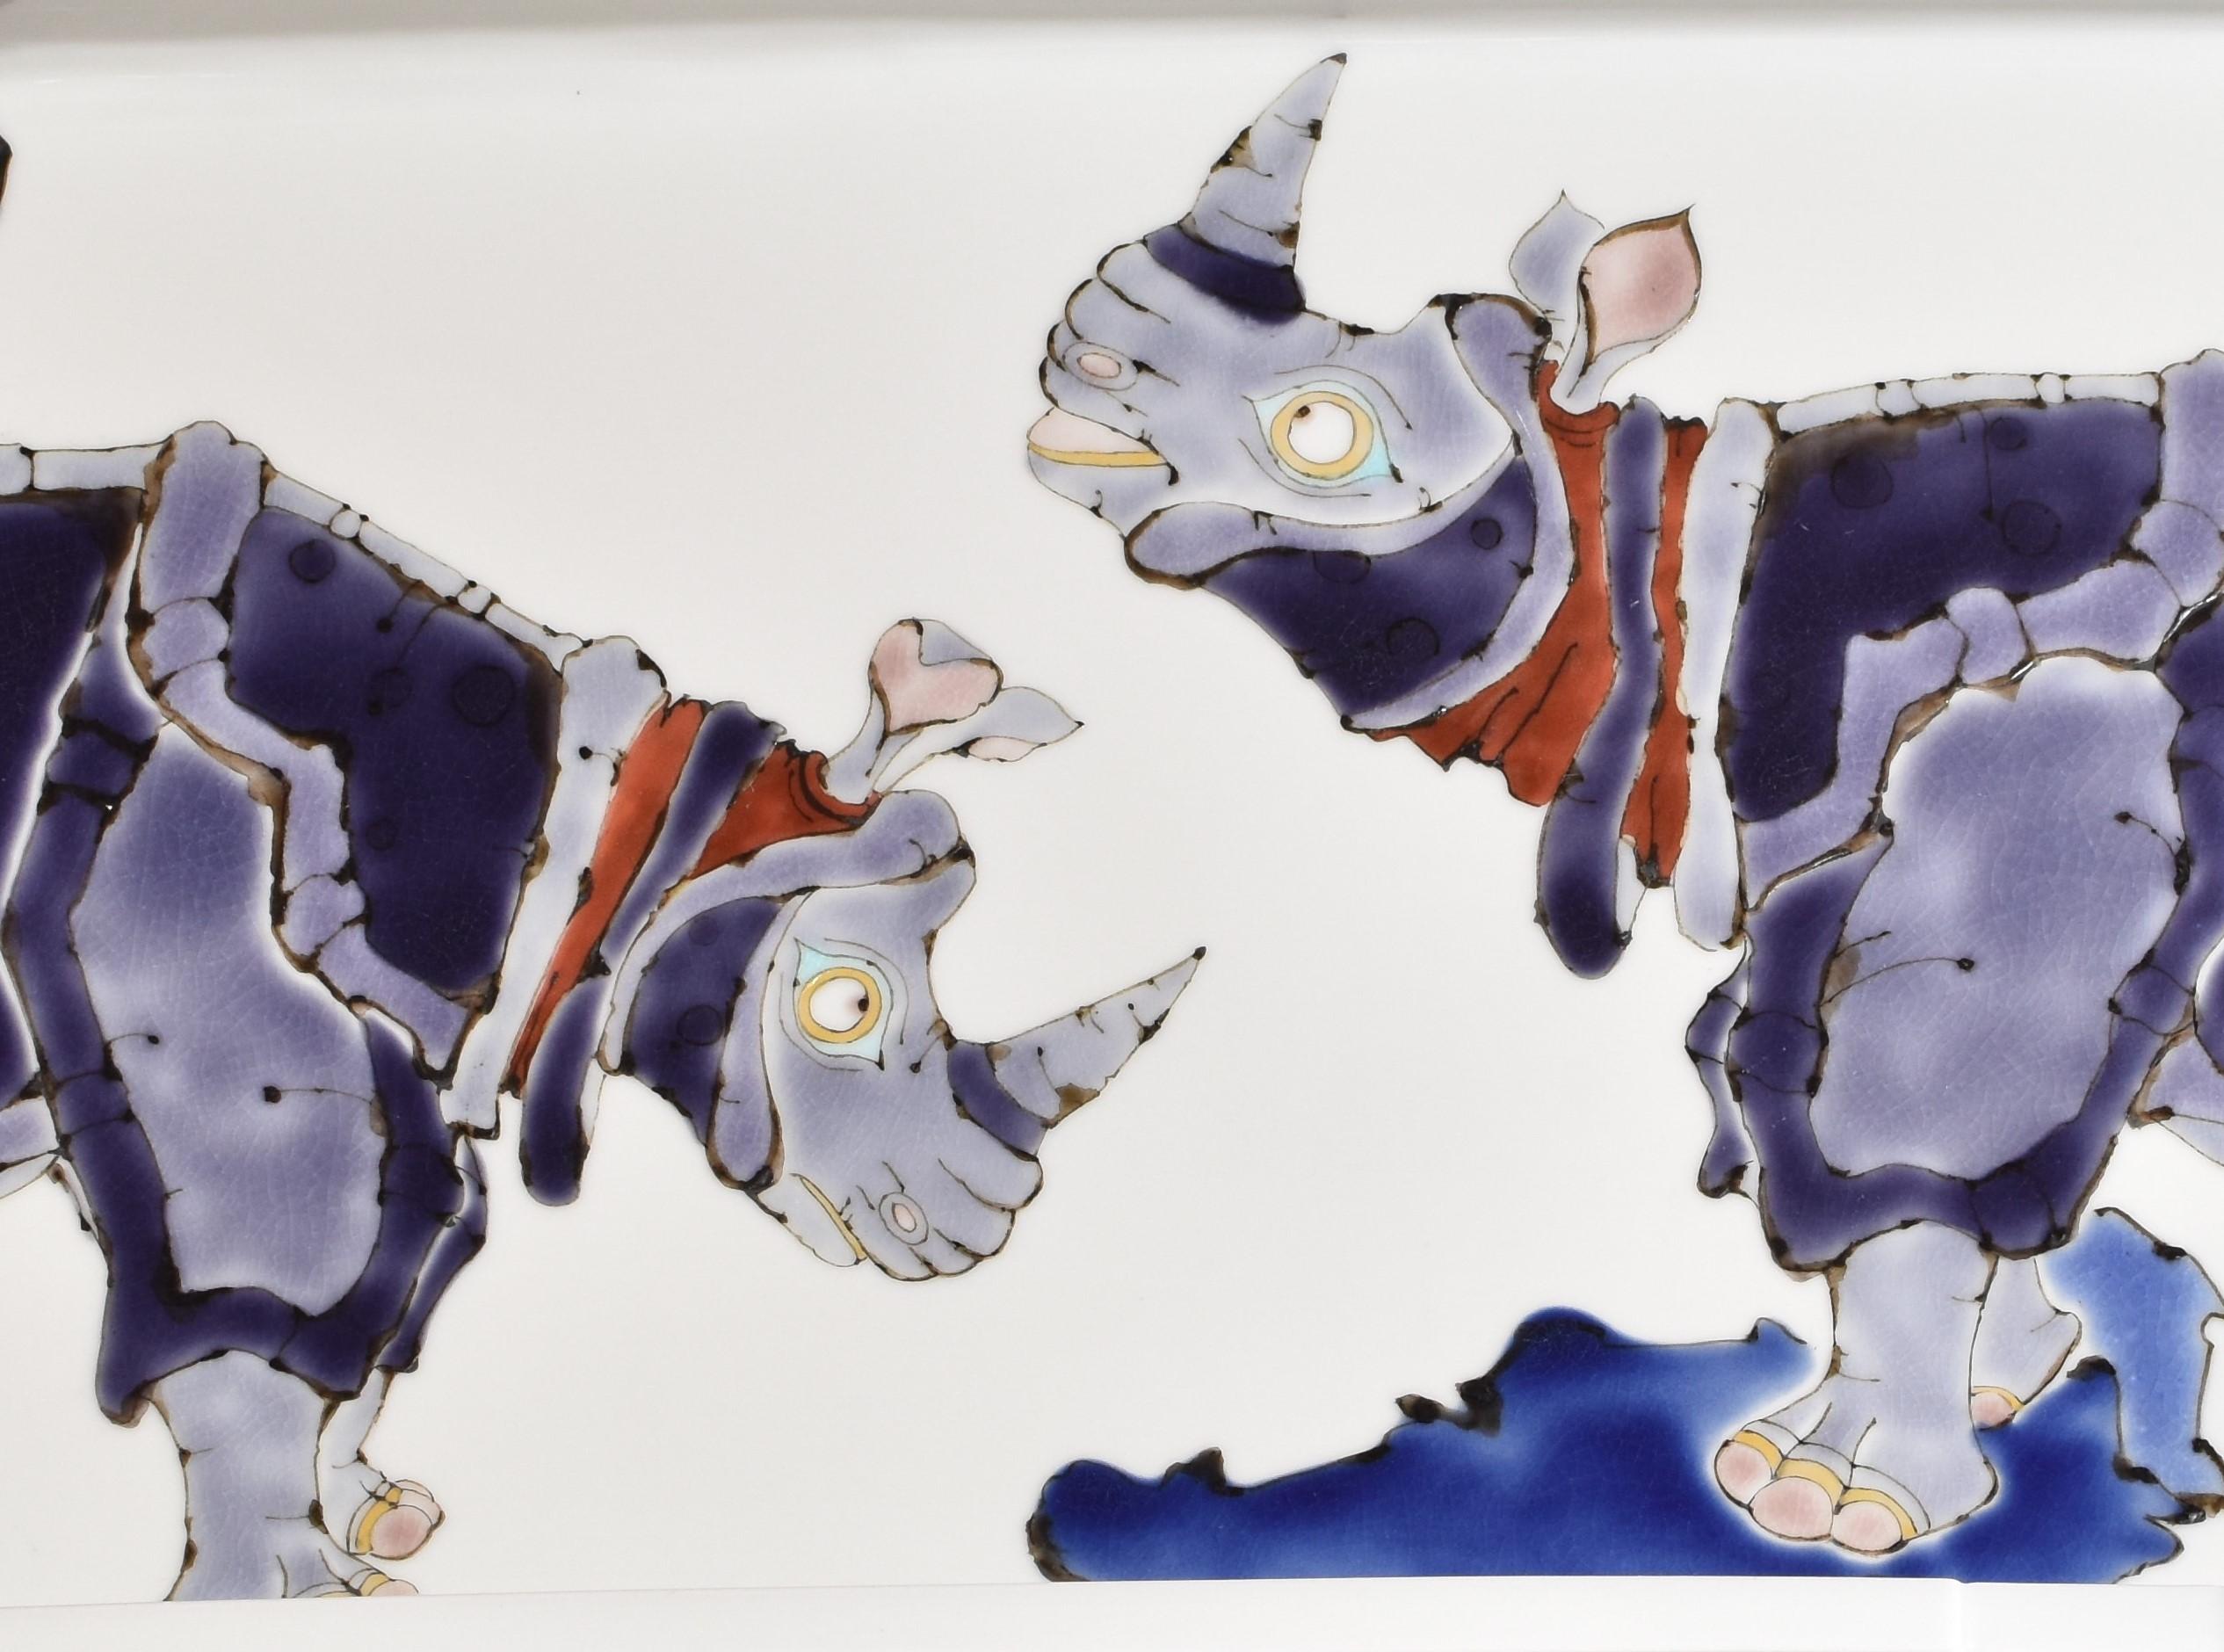 Außergewöhnliche sehr große japanische zeitgenössische dekorative signiert Porzellan Ladegerät, handbemalt auf einem schön geformten rechteckigen Körper in atemberaubenden Farben von Blau und Violett zeigt eine einzigartige Interpretation des